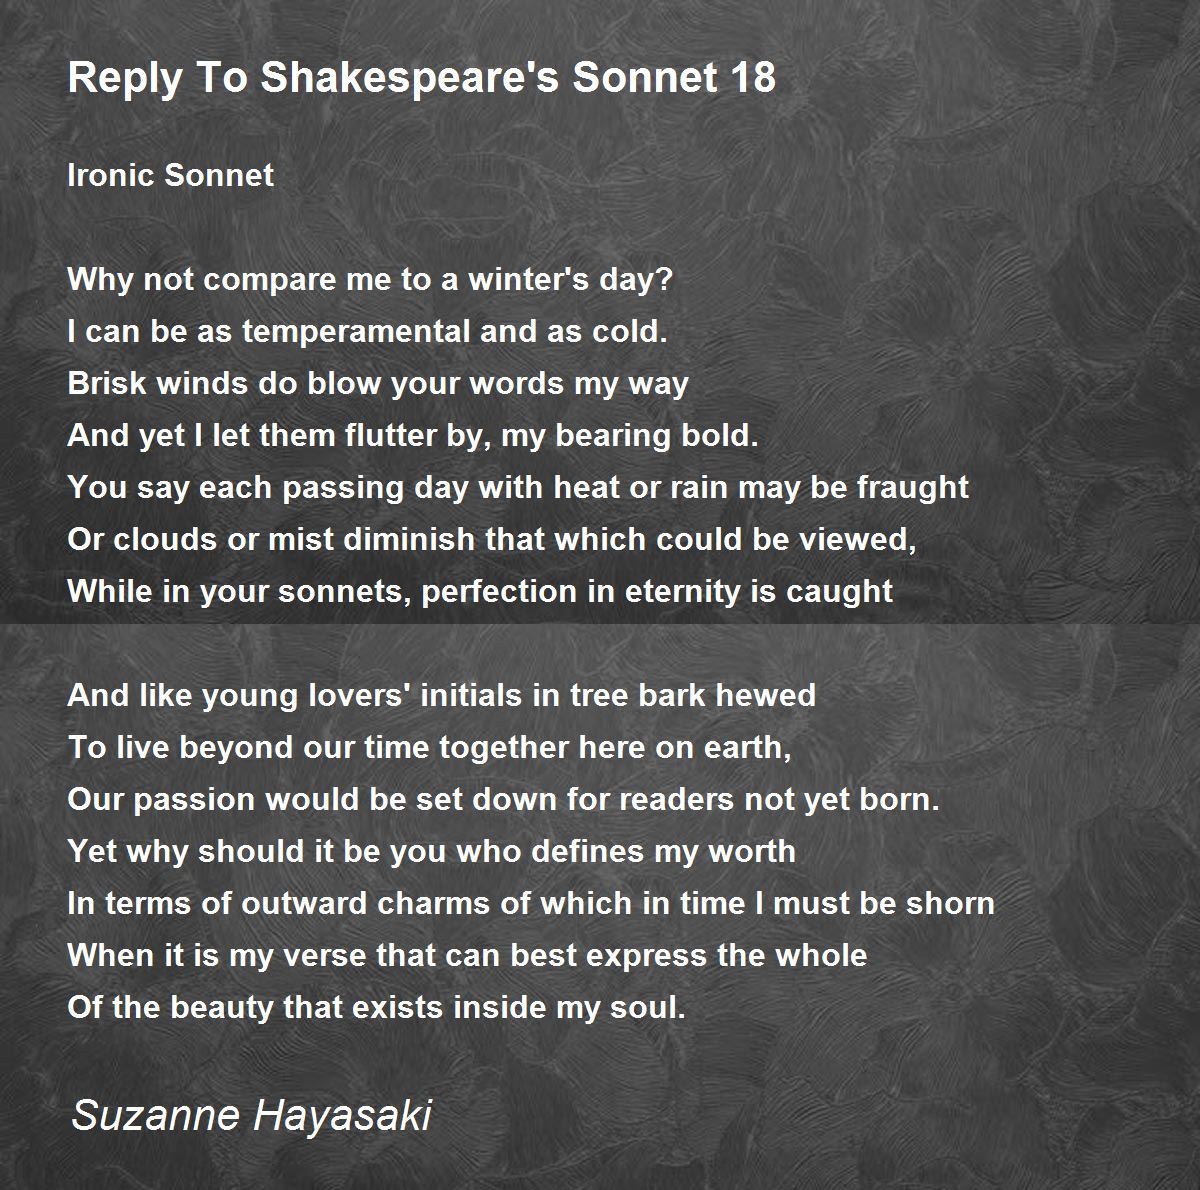 shakespeare sonnet 18